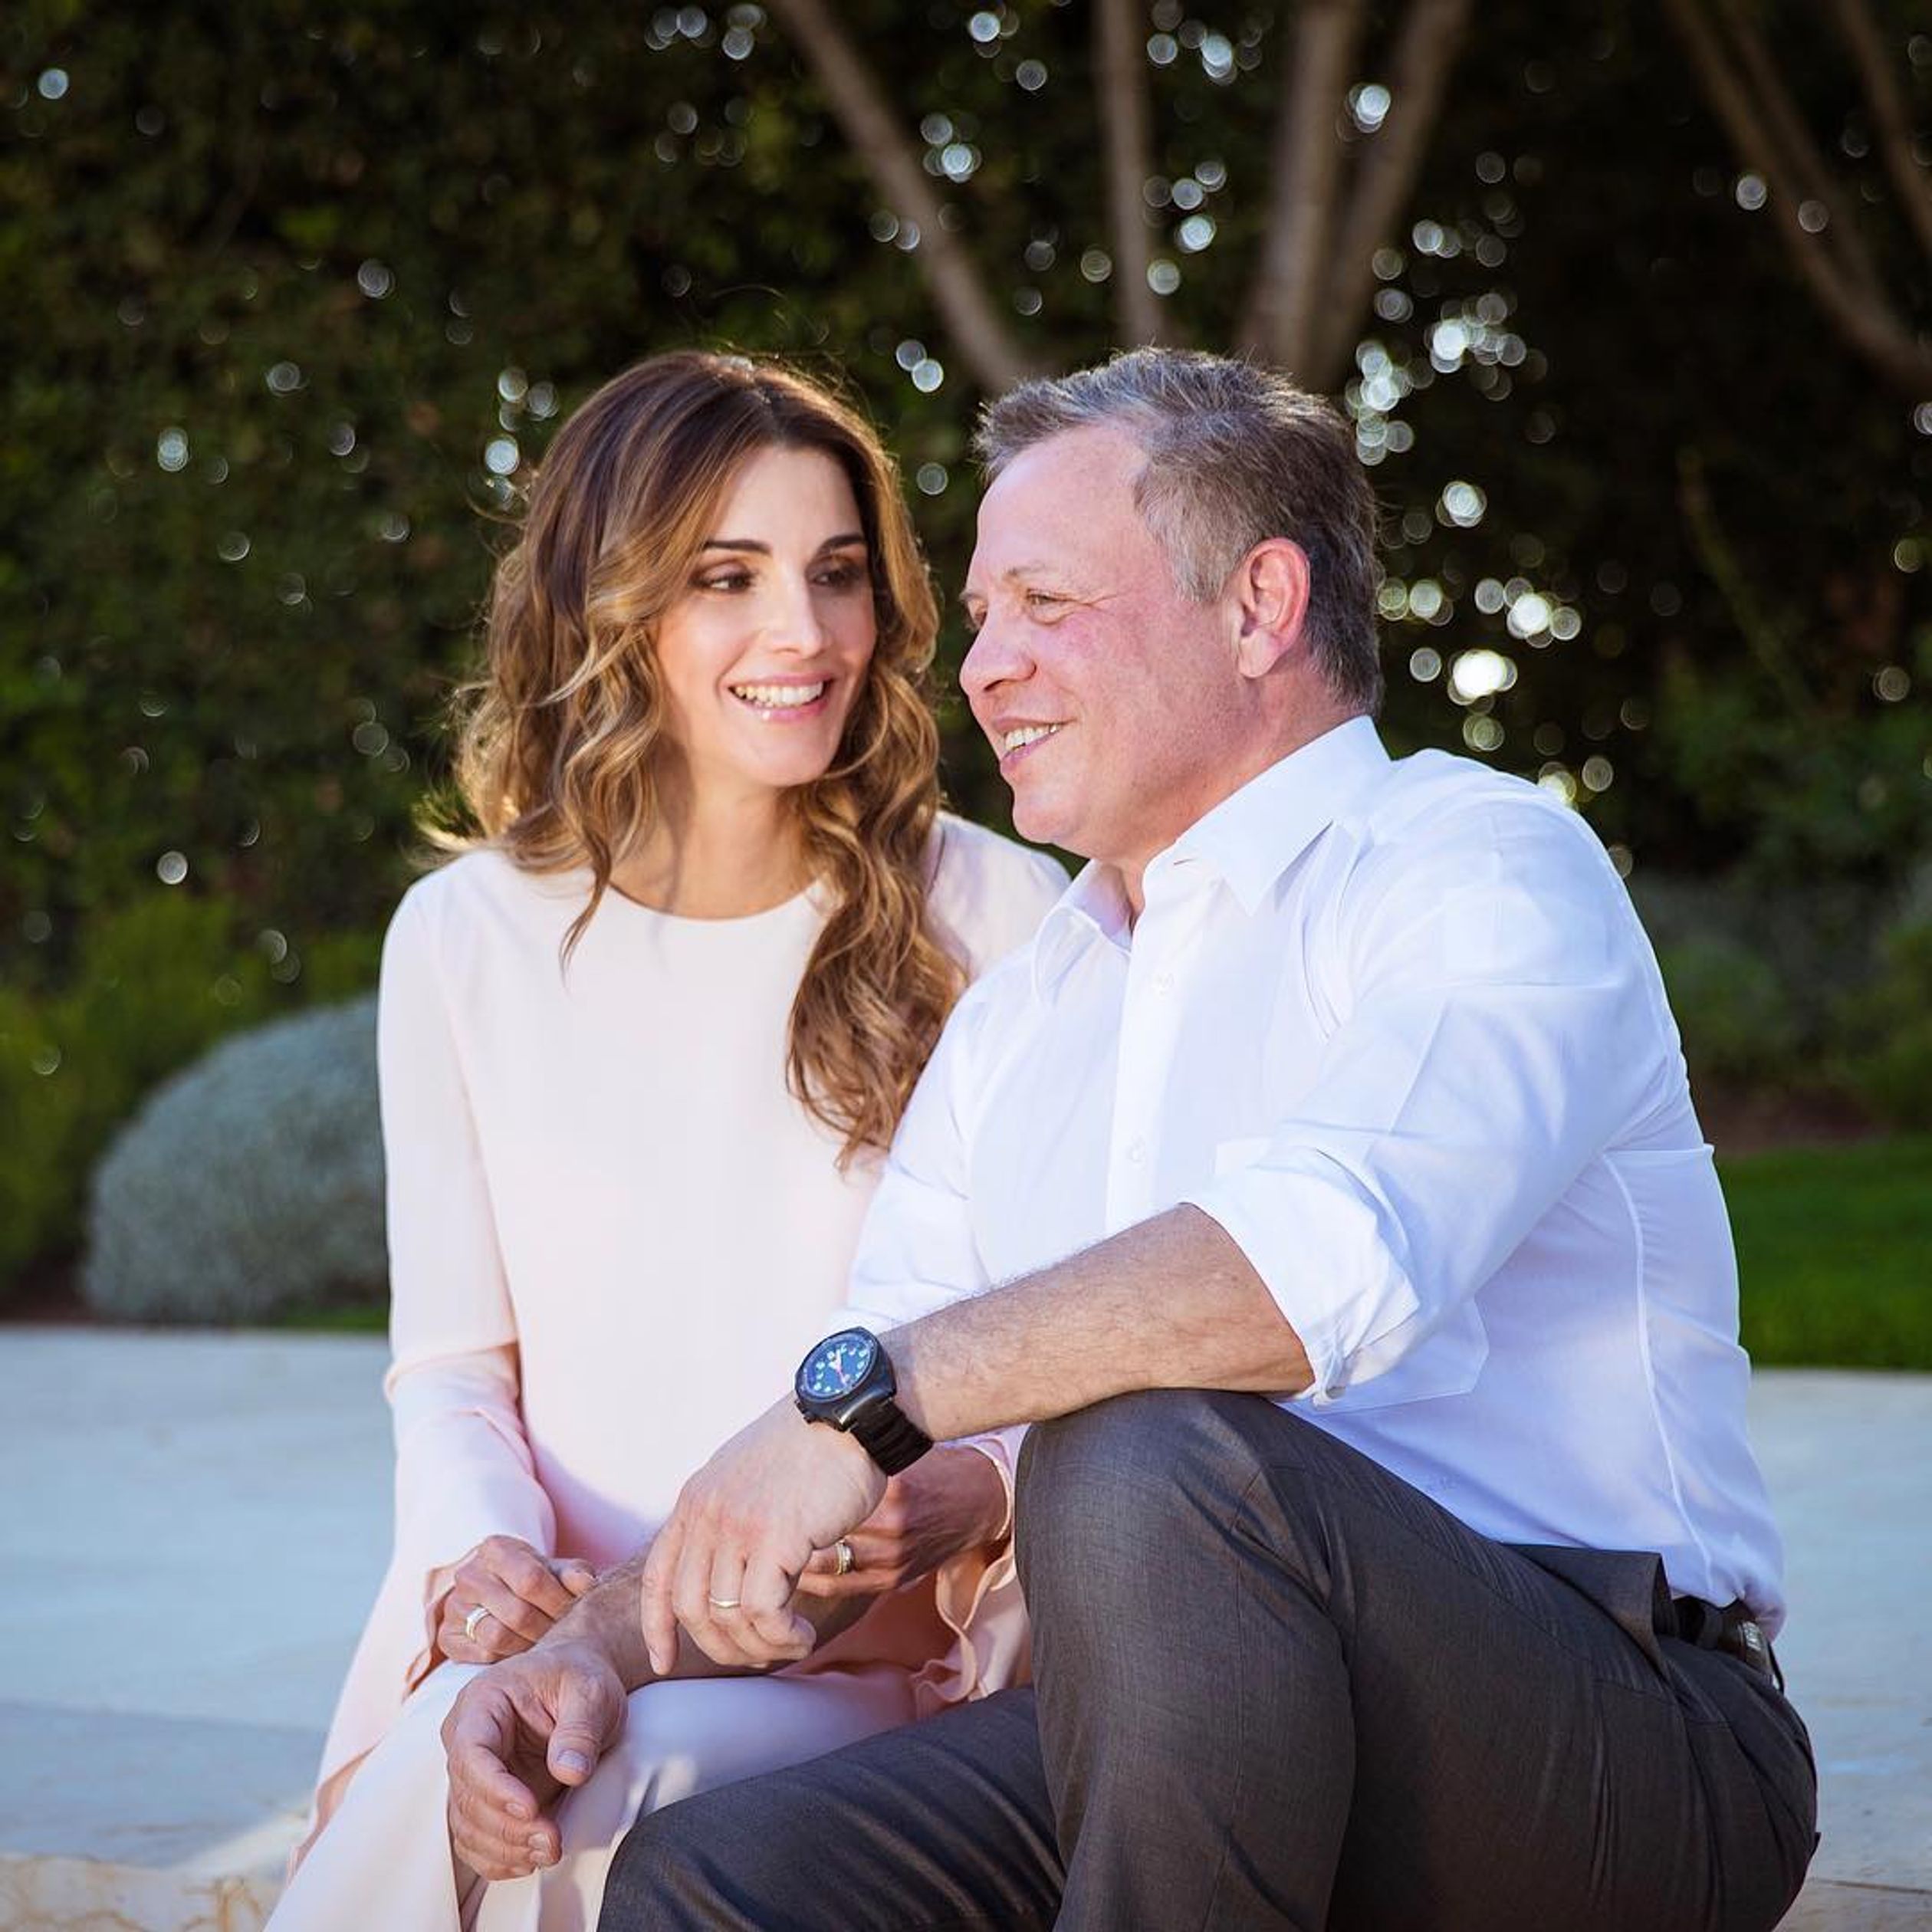 Koningin Rania deelt geregeld een kiekje van manlief op haar Instagram-account. De twee zijn samen